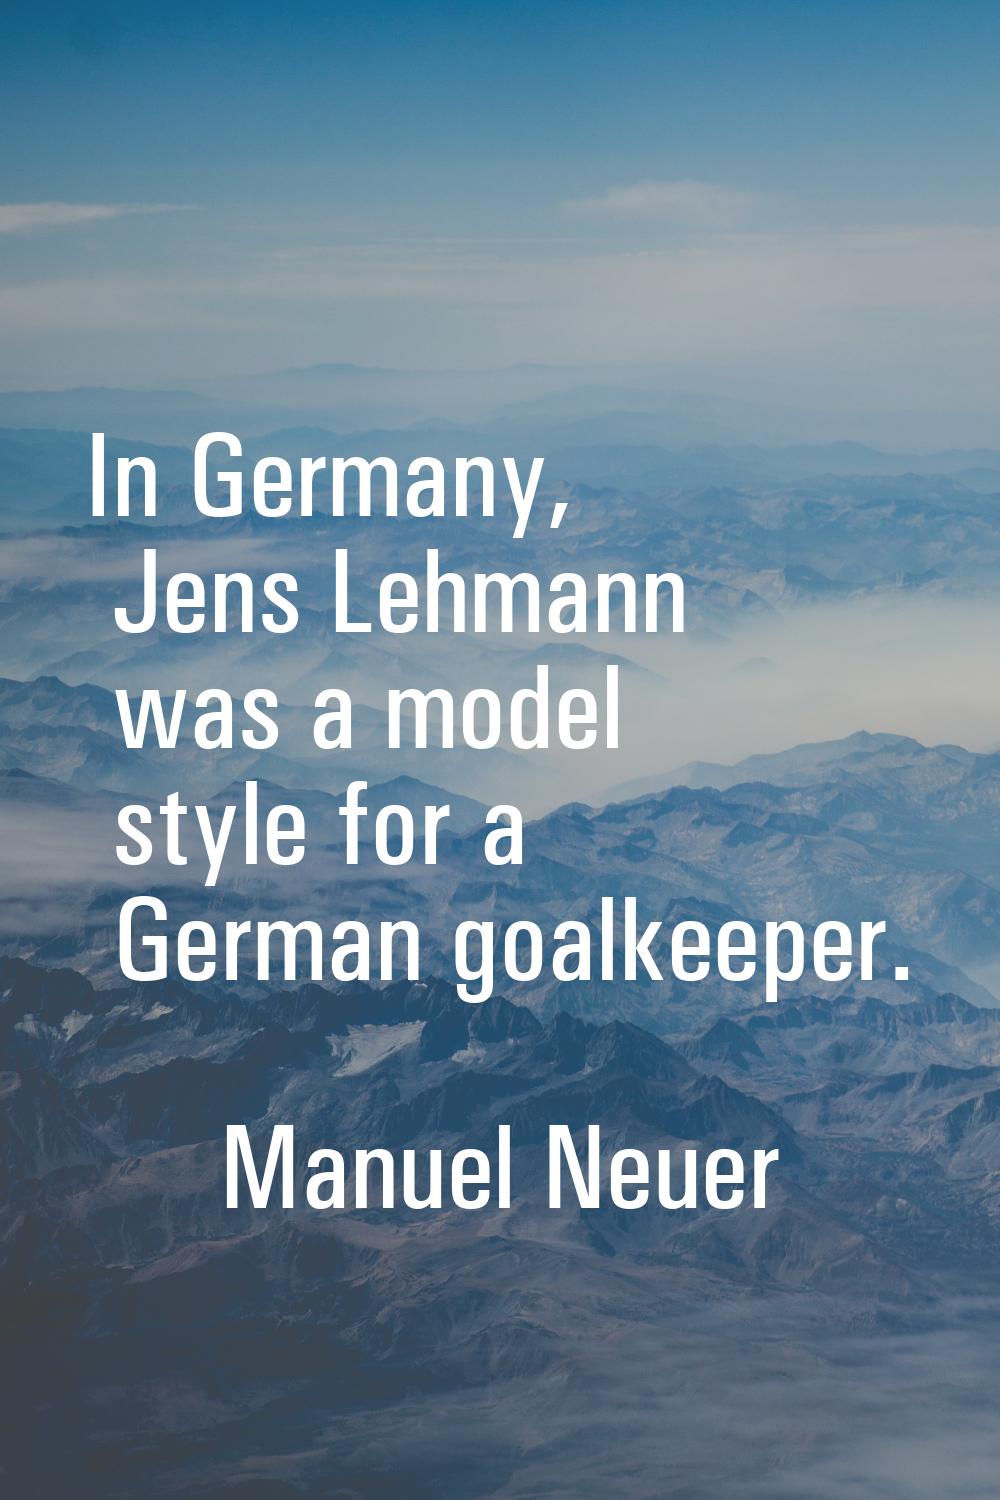 In Germany, Jens Lehmann was a model style for a German goalkeeper.